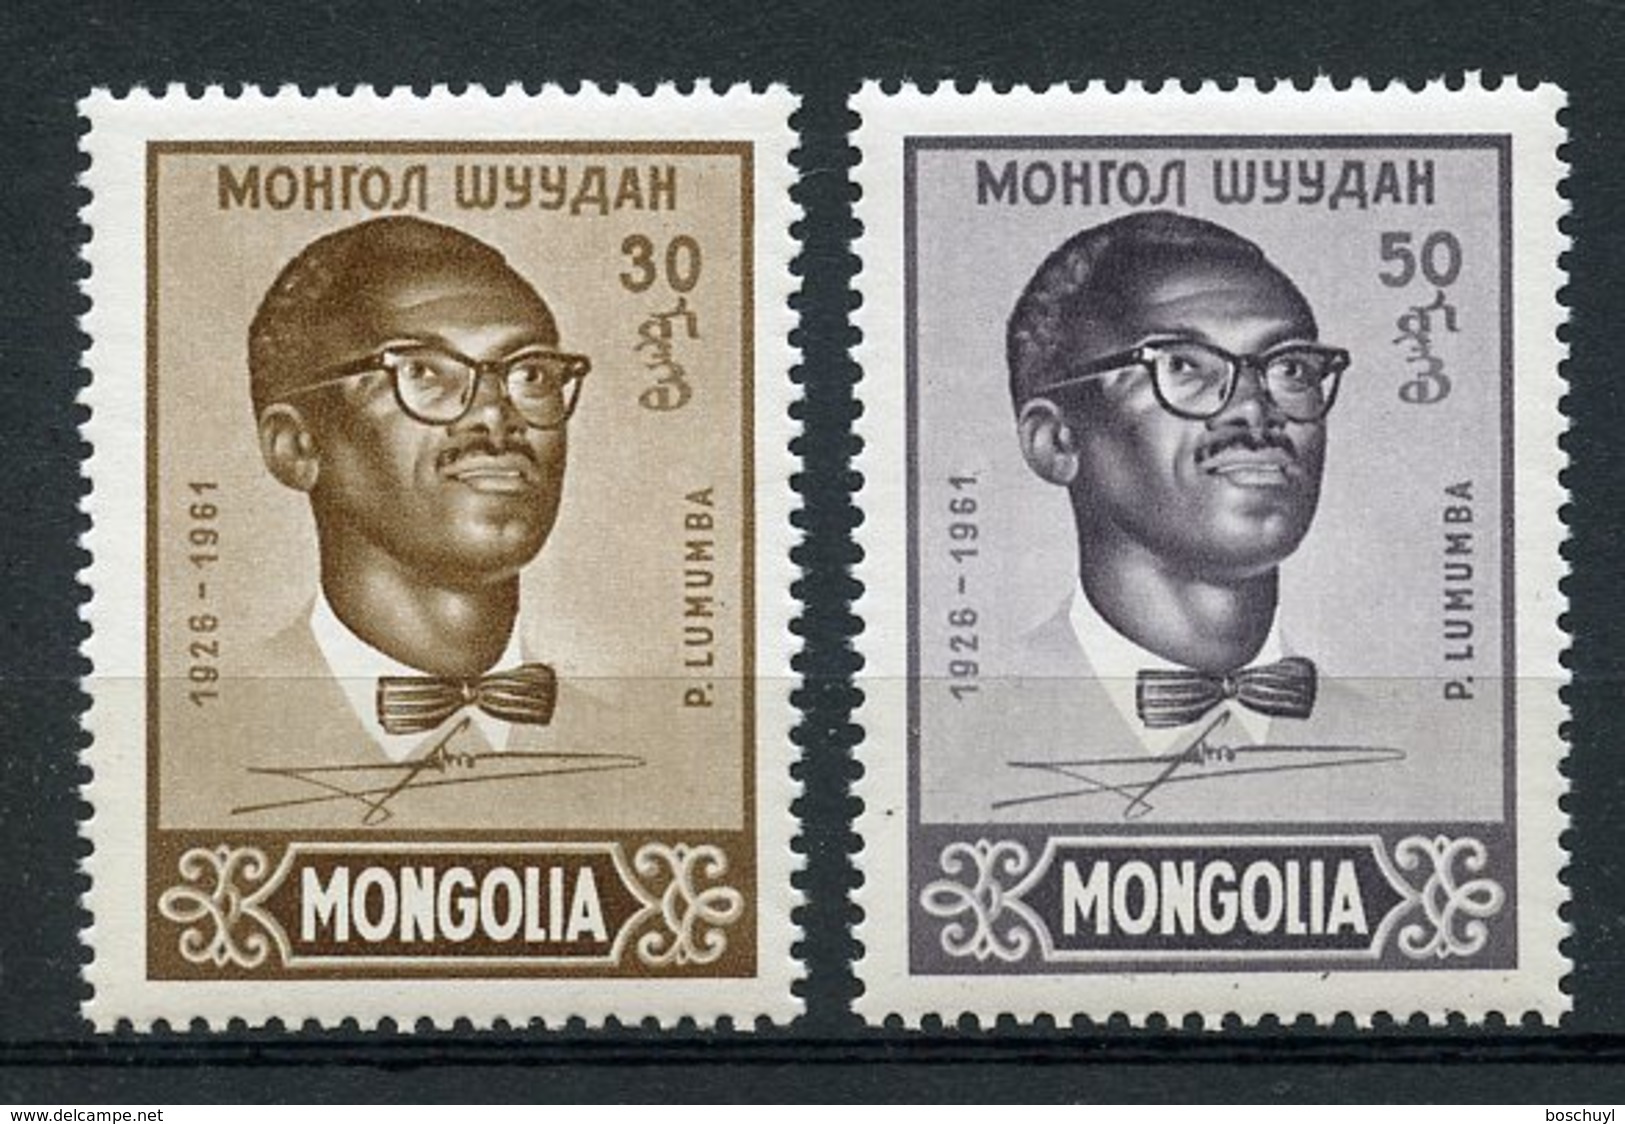 Mongolia, 1961, Patrice Lumumba, Congo, MNH, Michel 212-213 - Mongolie